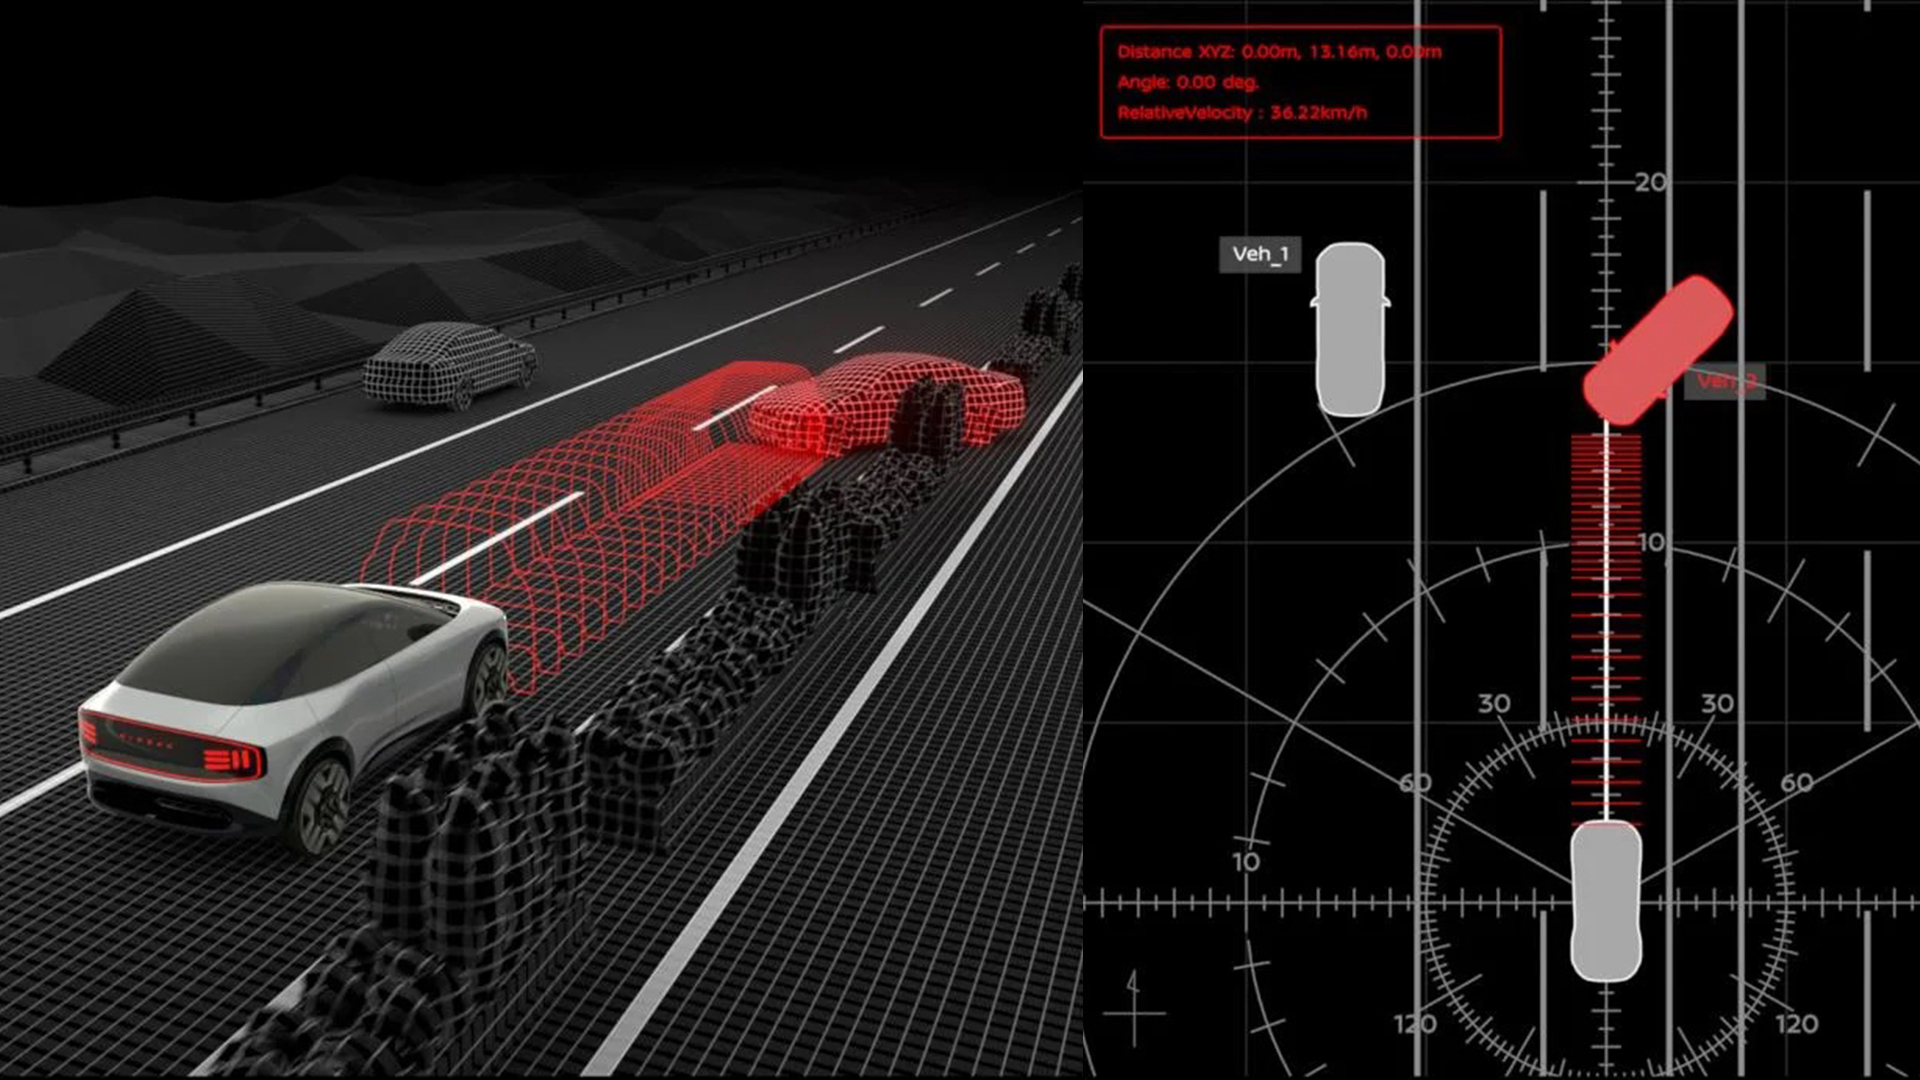 Bilen går videre gjennom en virtuell datamaskinbane, som permanent registrerer data om den, for å utføre en eventuell unnamanøver samtidig som den husker omgivelsene.